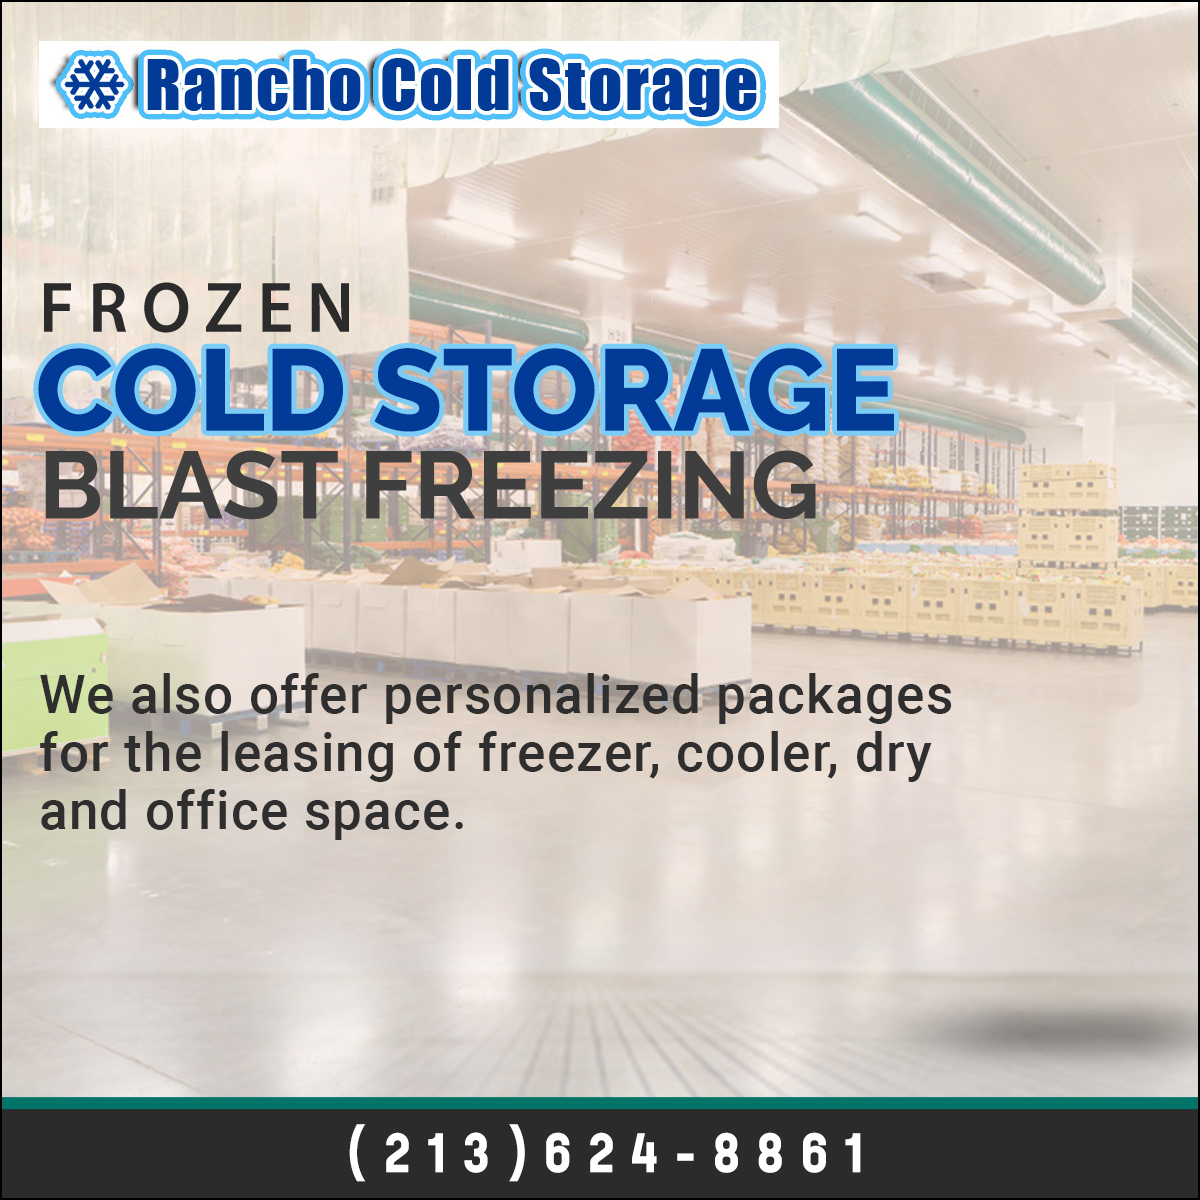 Rancho Cold Storage